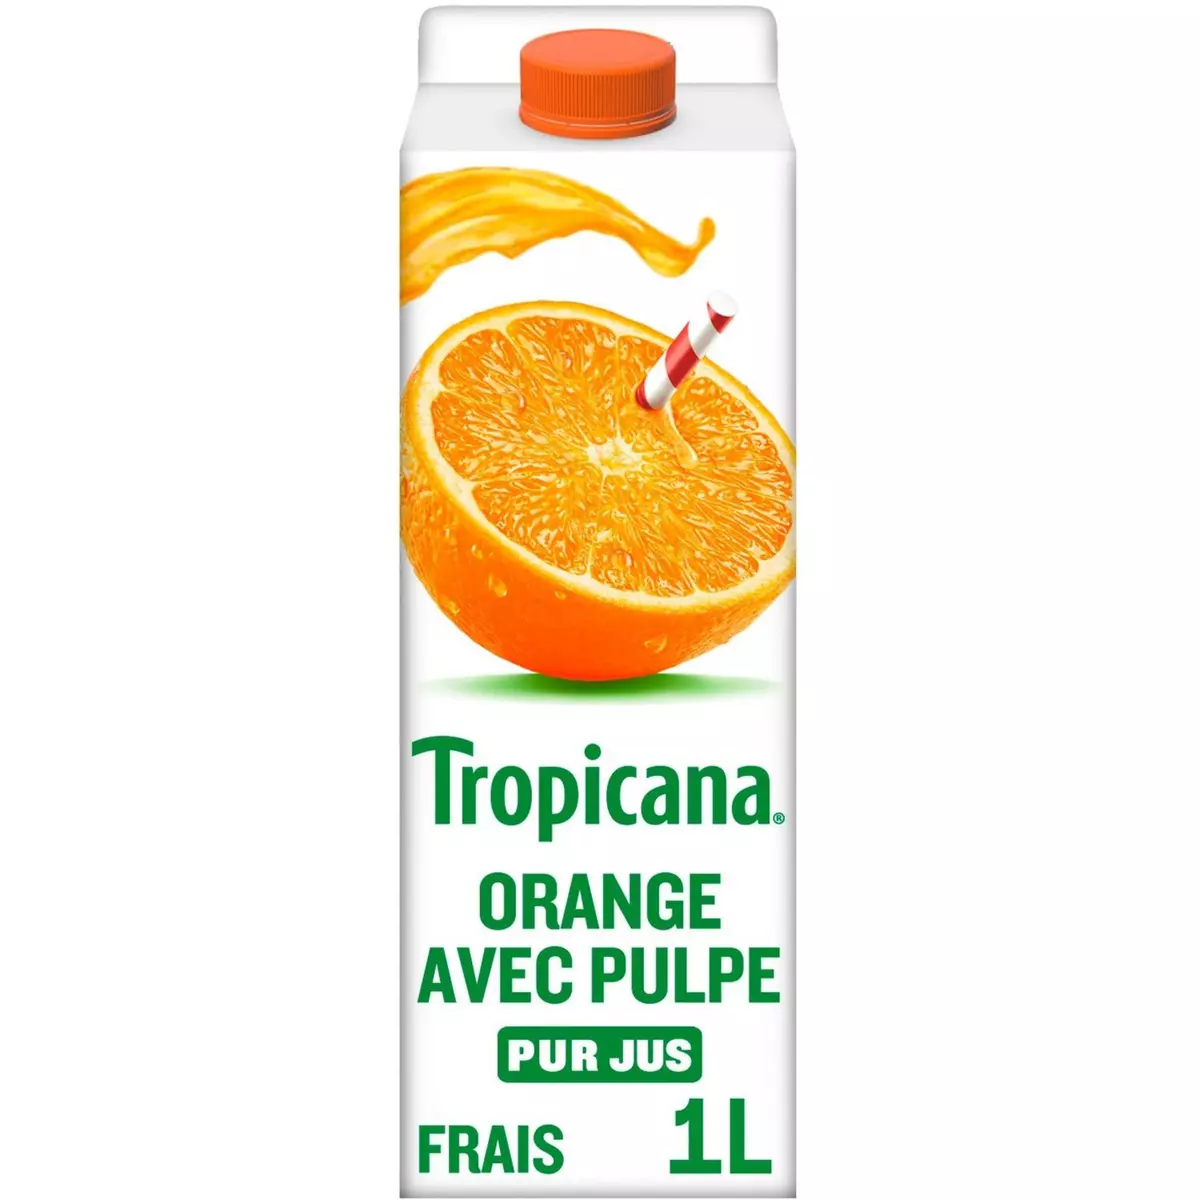 TROPICANA Pur jus d'oranges avec pulpe 1L